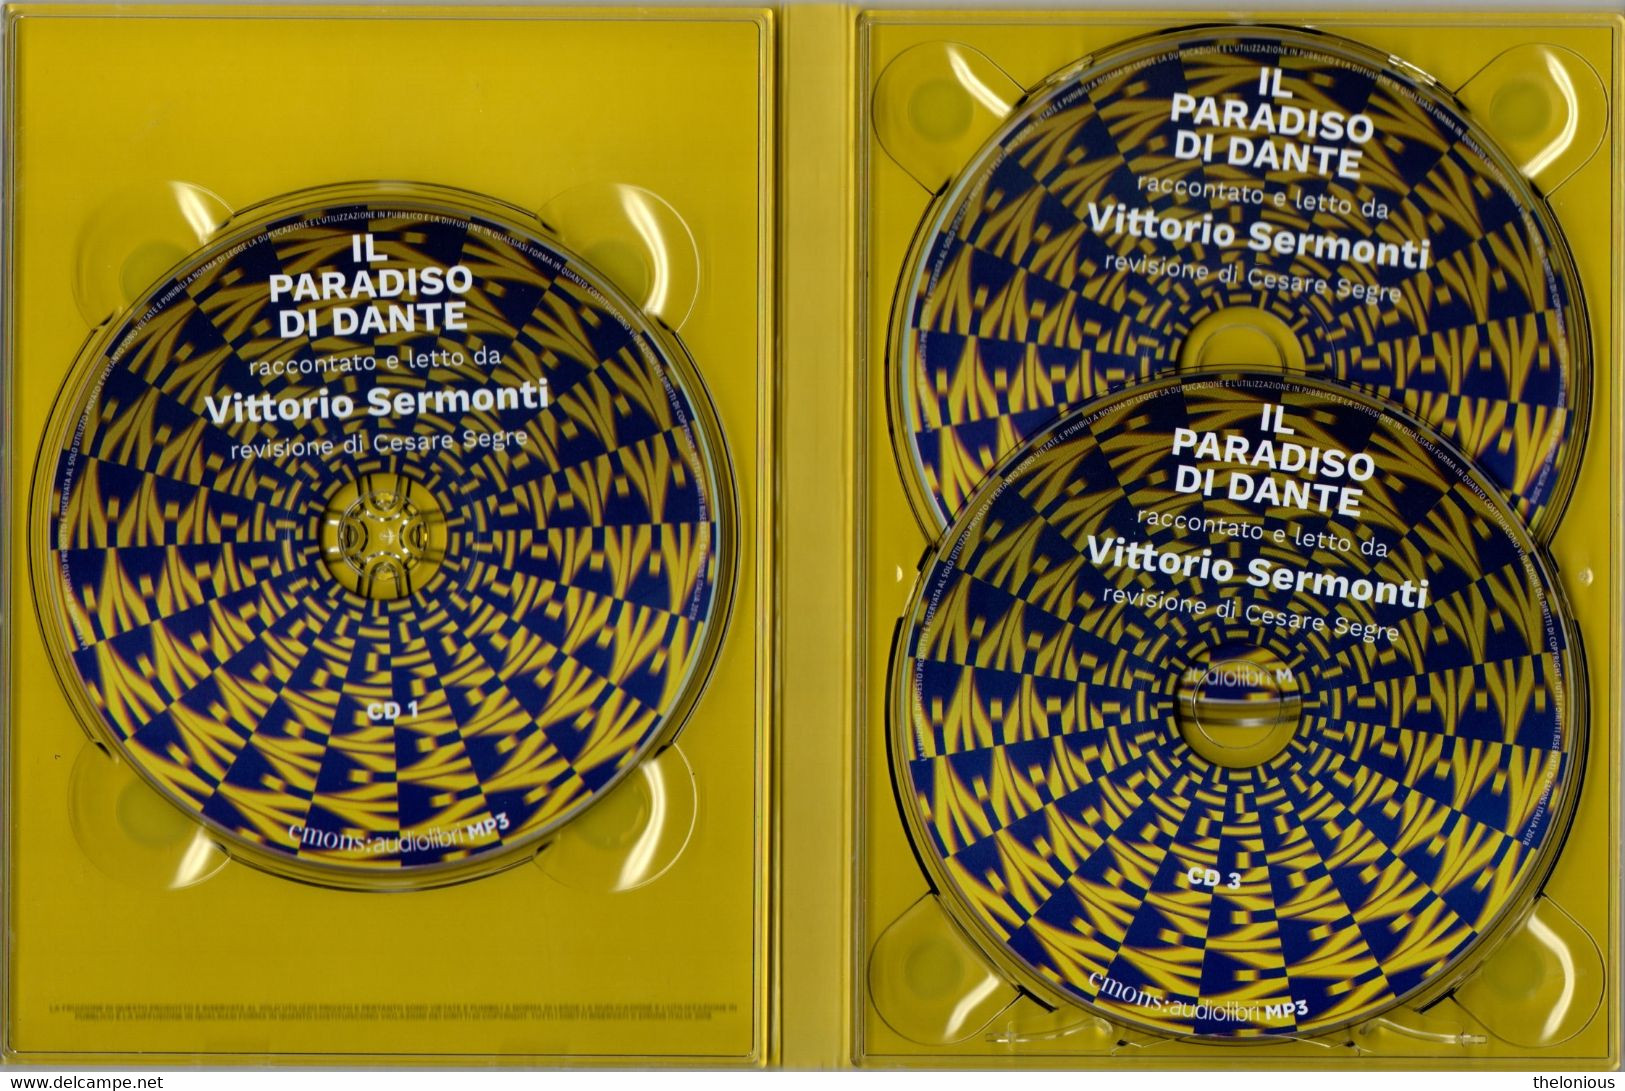 # Audiolibro: Il Paradiso Di Dante Raccontato E Letto Da Vittorio Sermonti, 3 CD MP3 - Sci-Fi & Fantasy